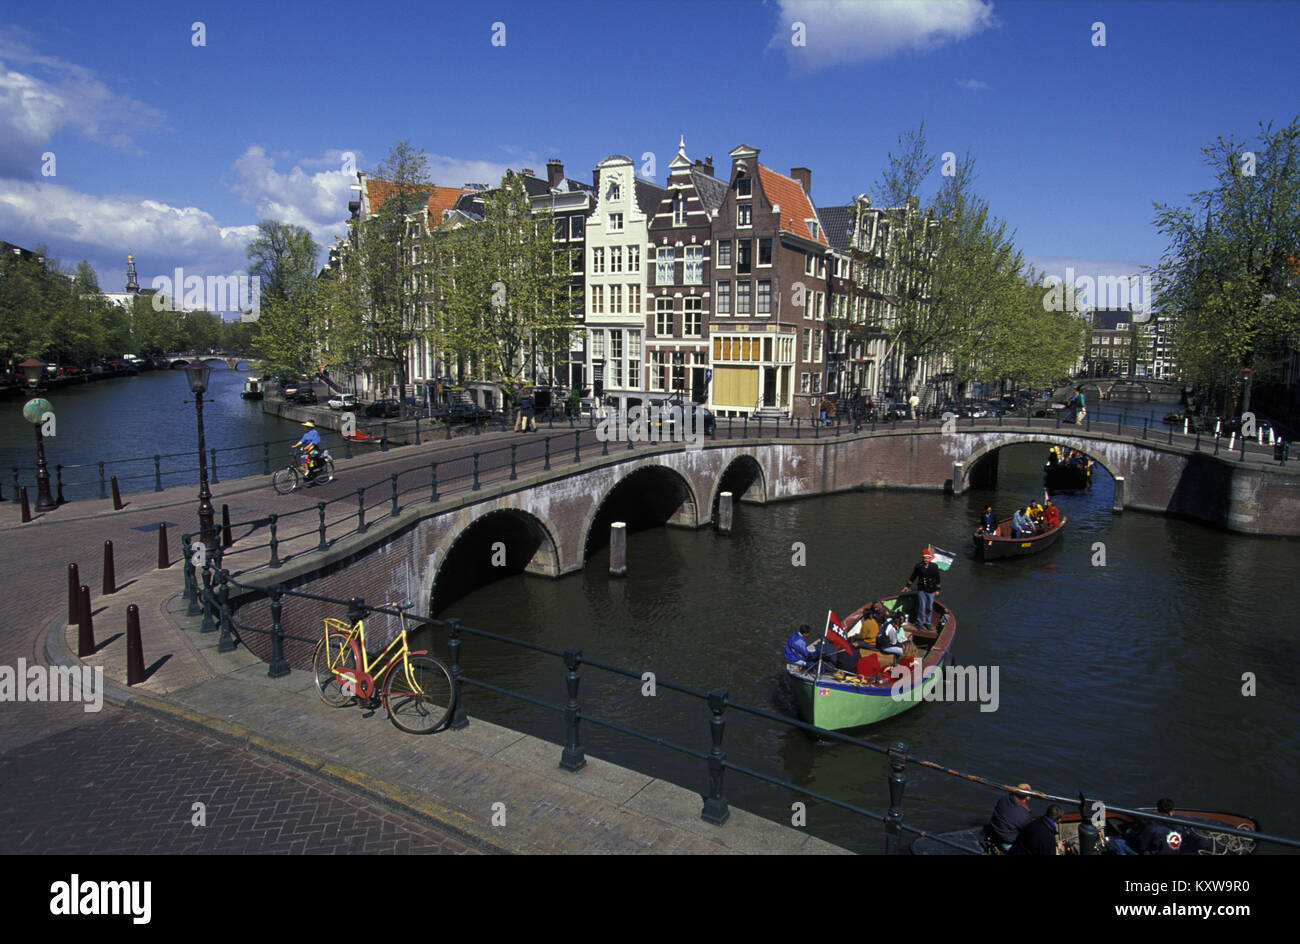 Die Niederlande, Amsterdam, Überschreiten der Kanäle genannt Keizersgracht und Leidsegracht. Goldene alter Häuser. UNESCO-Weltkulturerbe. Kleine Boote. 17. Stockfoto